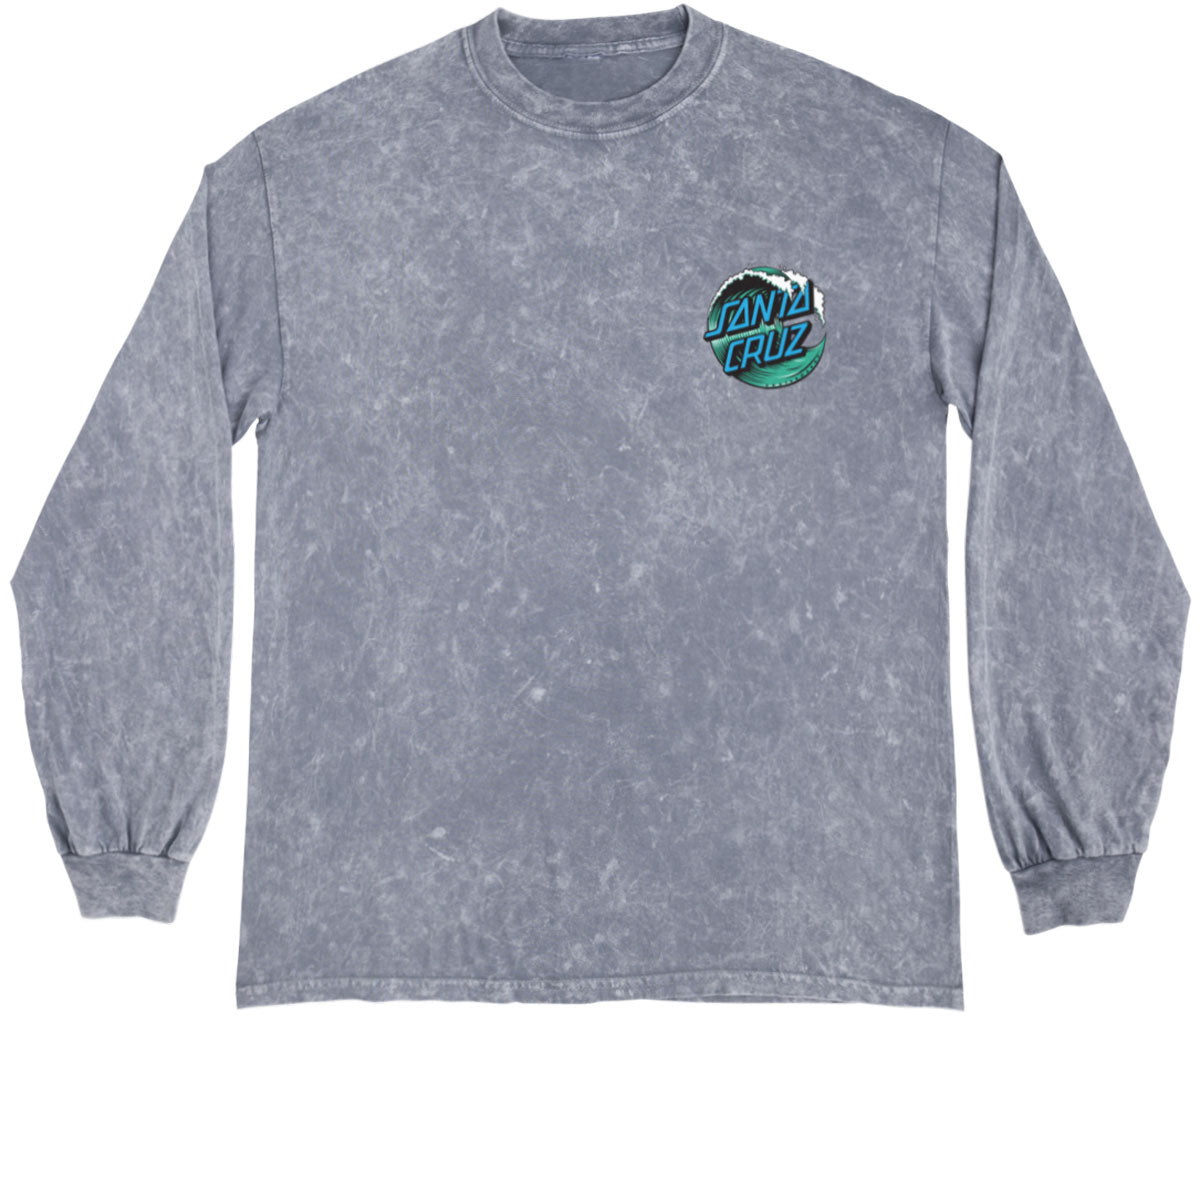 Santa Cruz Wave Dot Long Sleeve T-Shirt - Mineral Wash Grey image 1